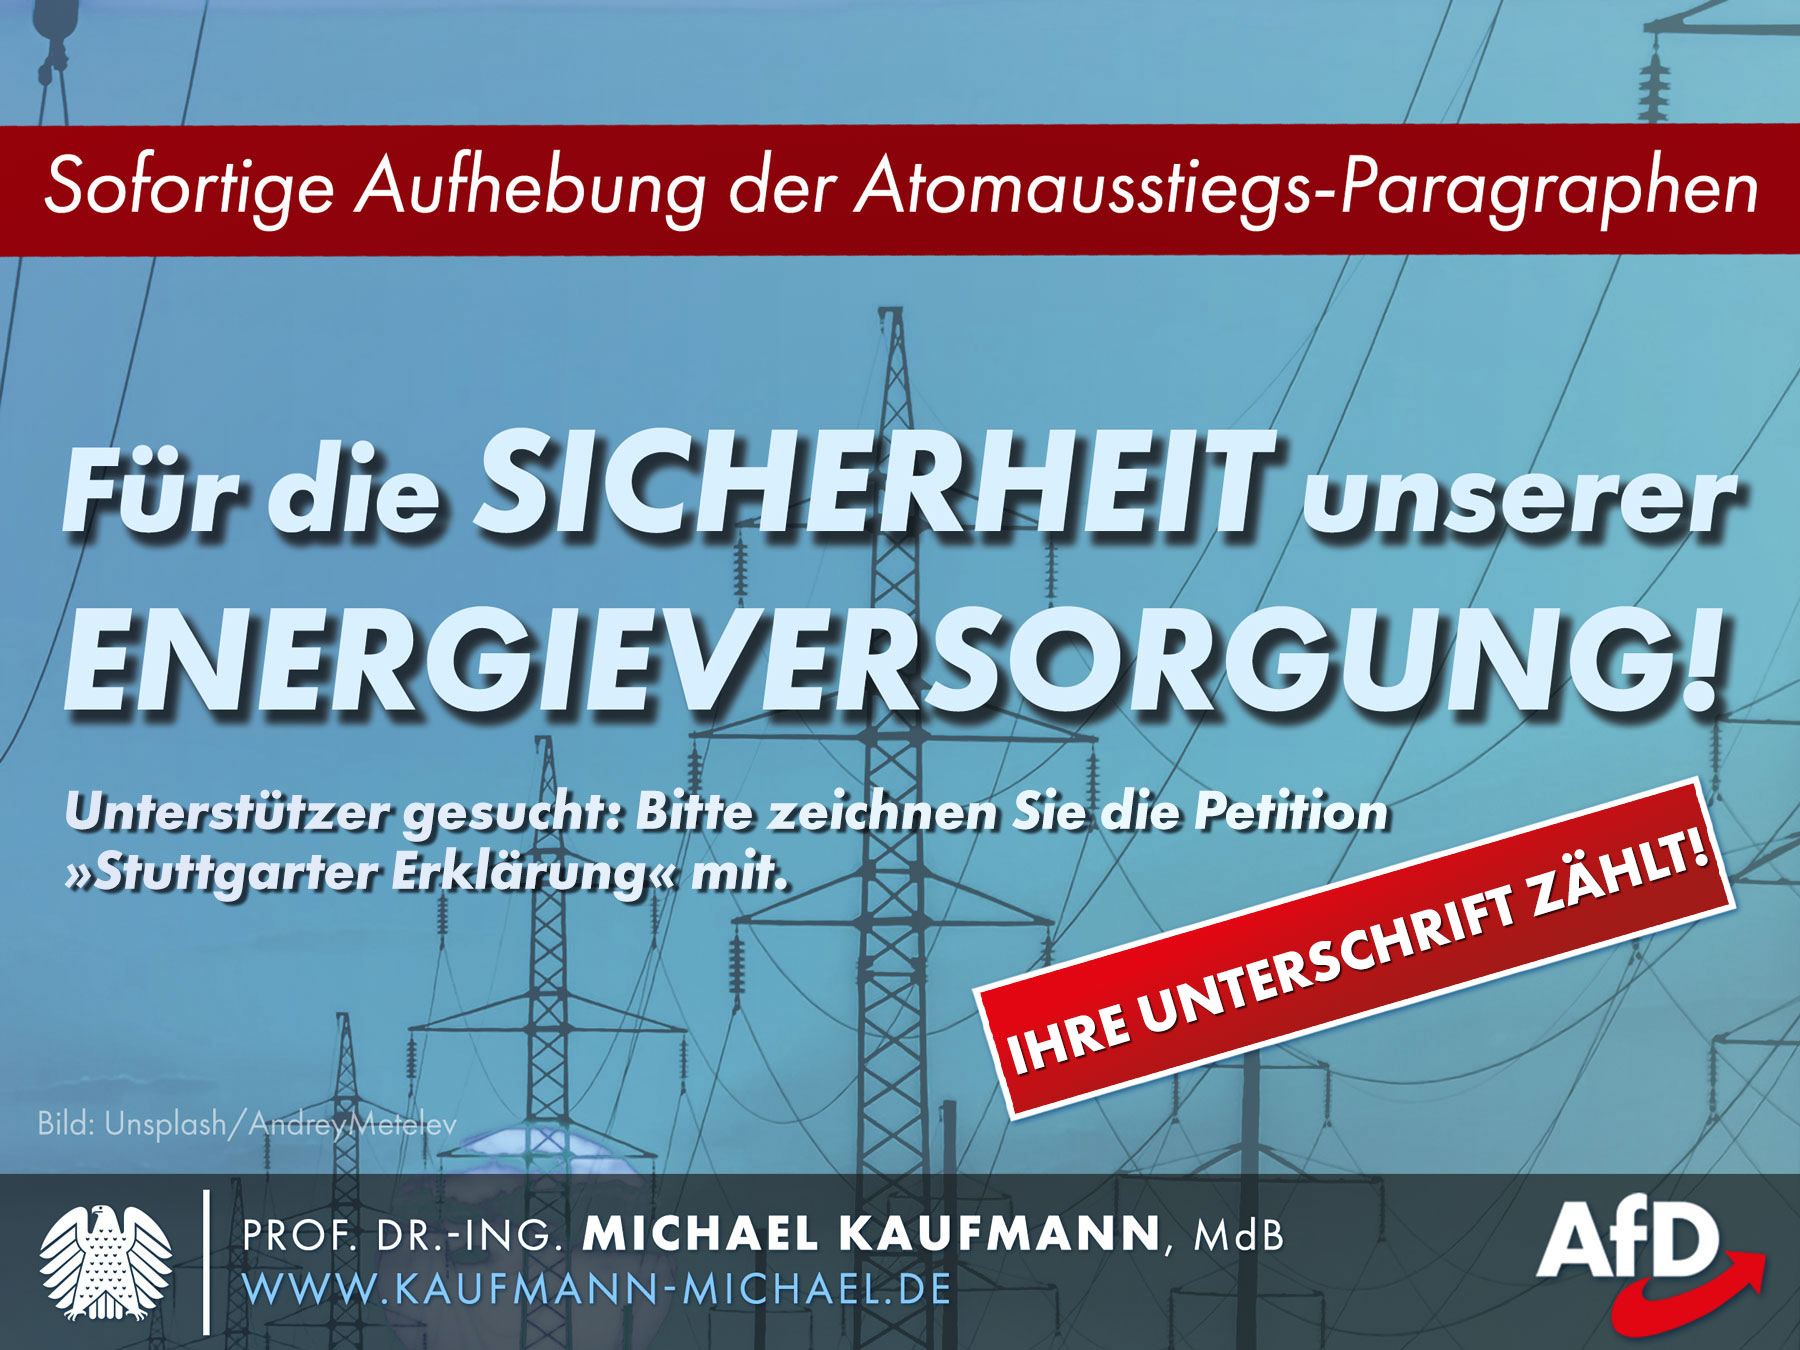 "Stuttgarter Erklärung" - Aufhebung der Atomausstiegs-Paragraphen gefordert